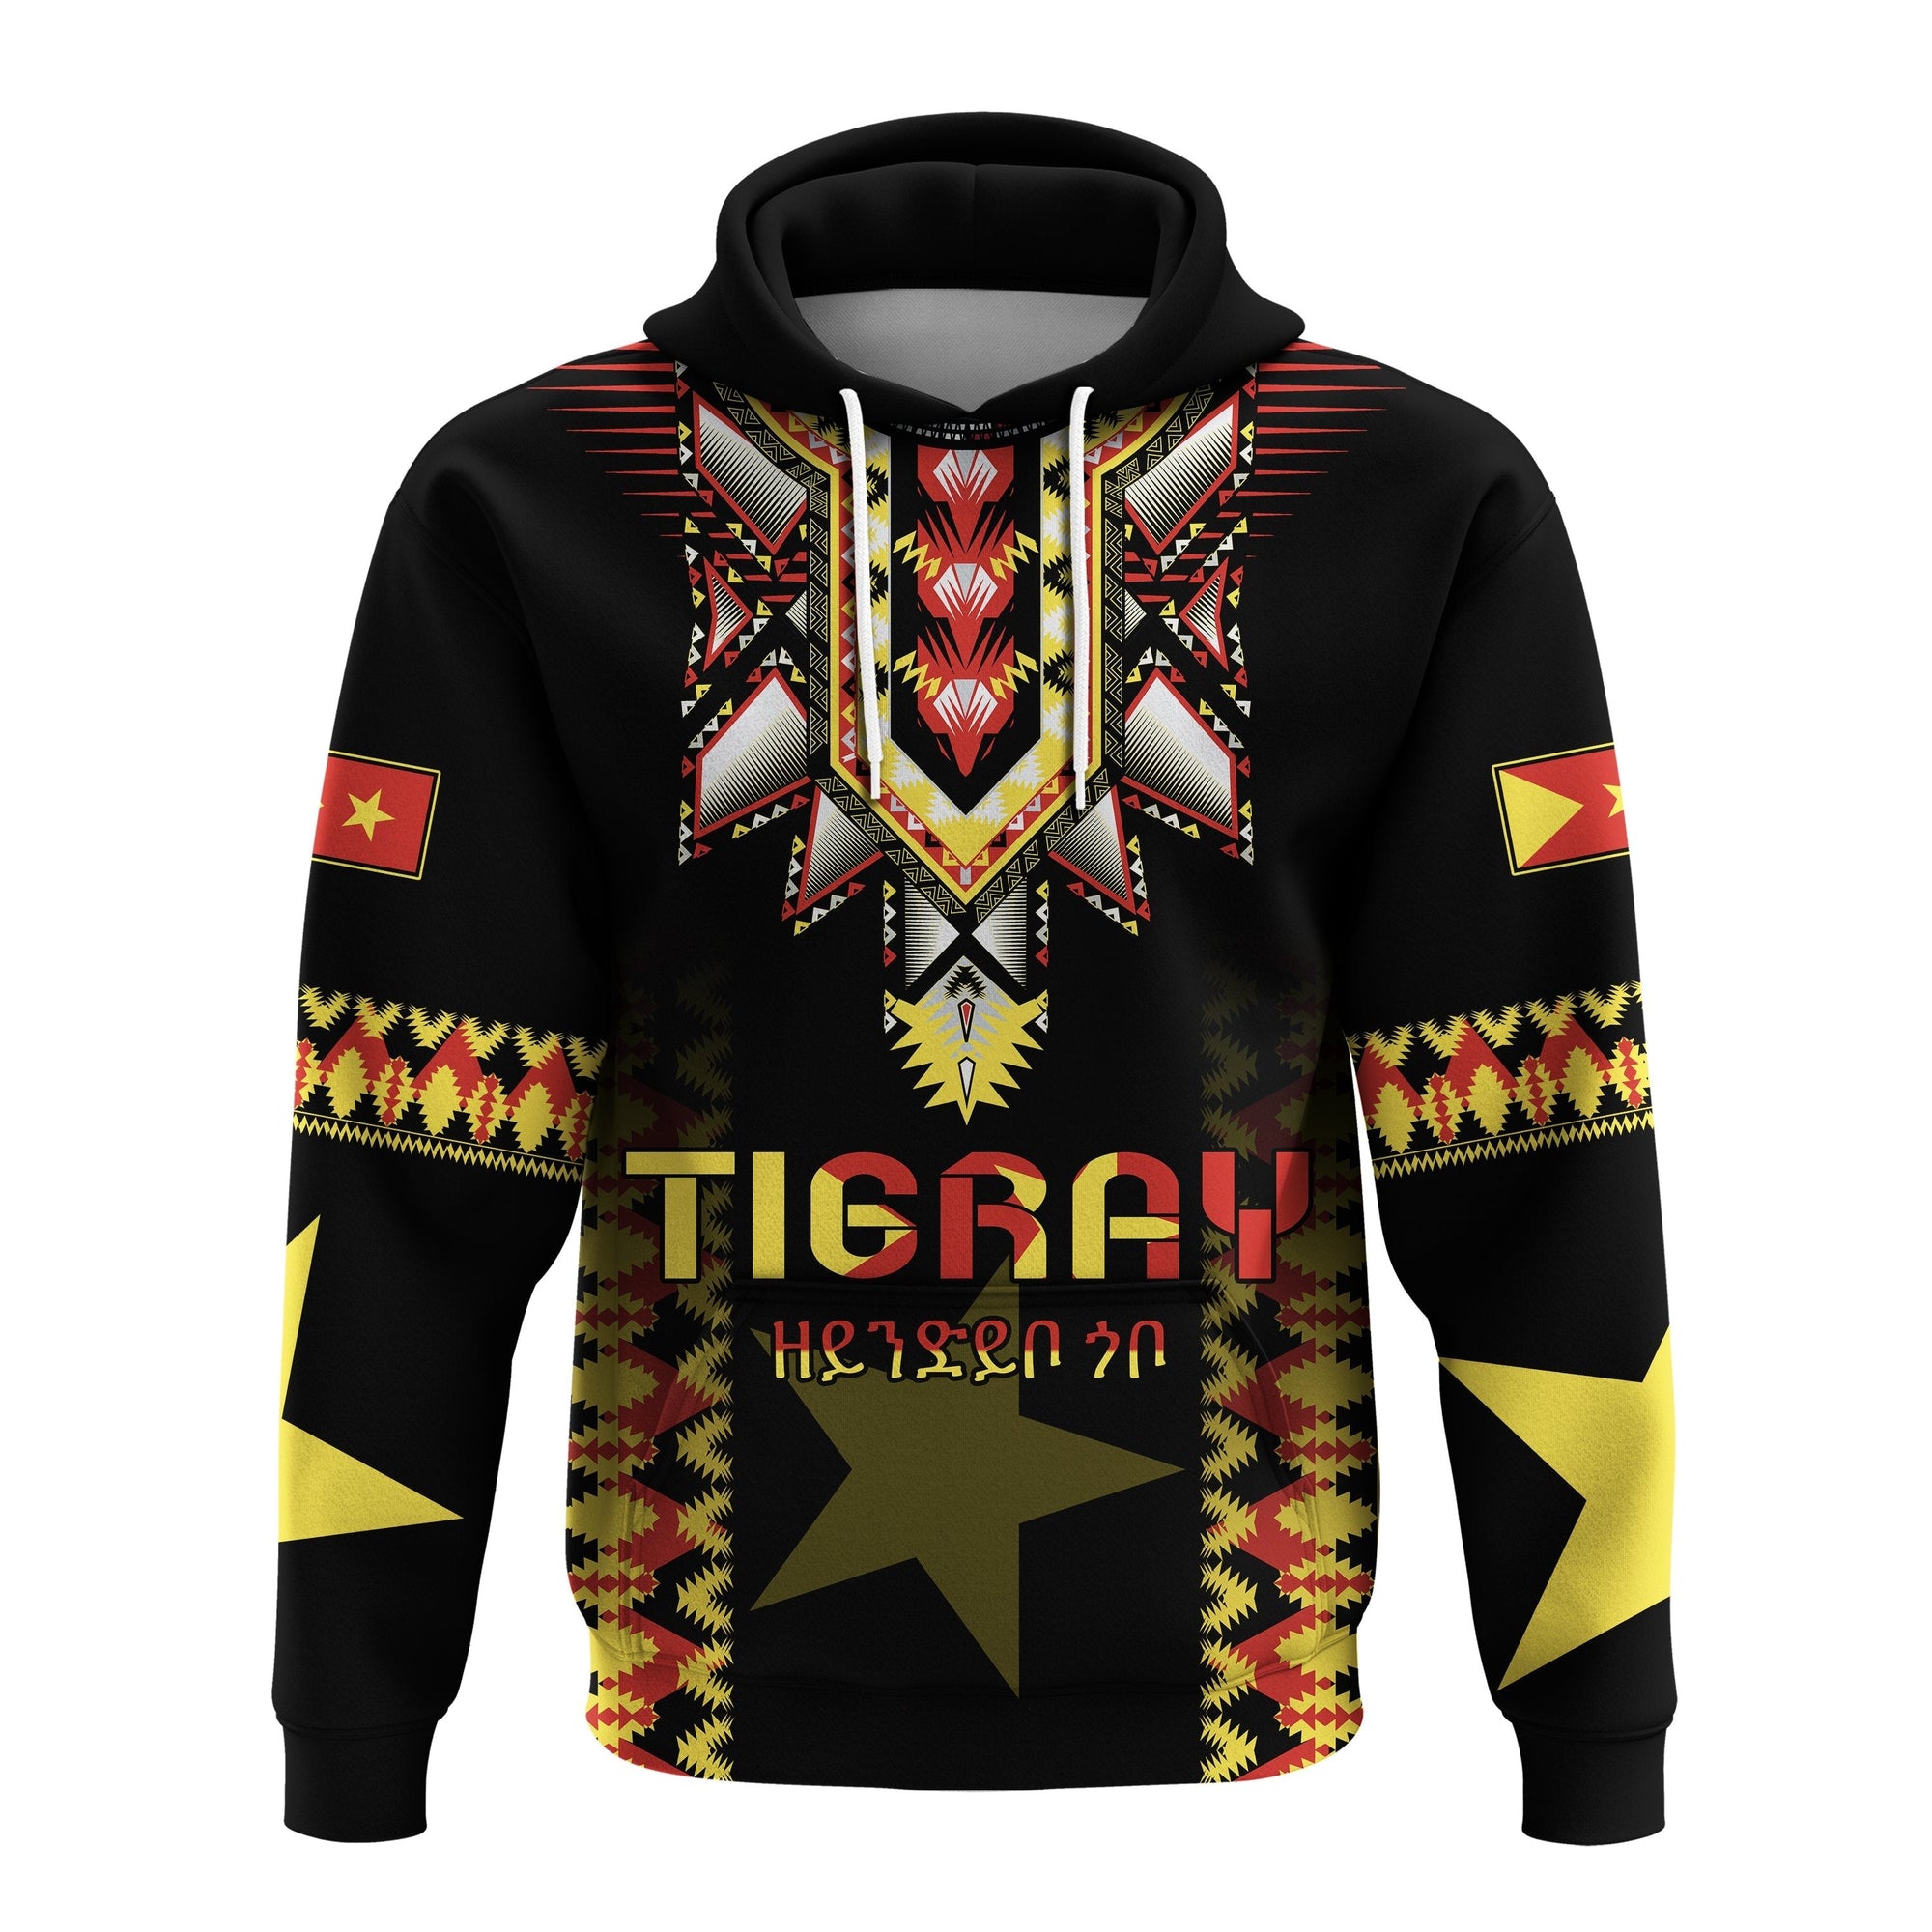 tigray-hoodie-africa-pattern